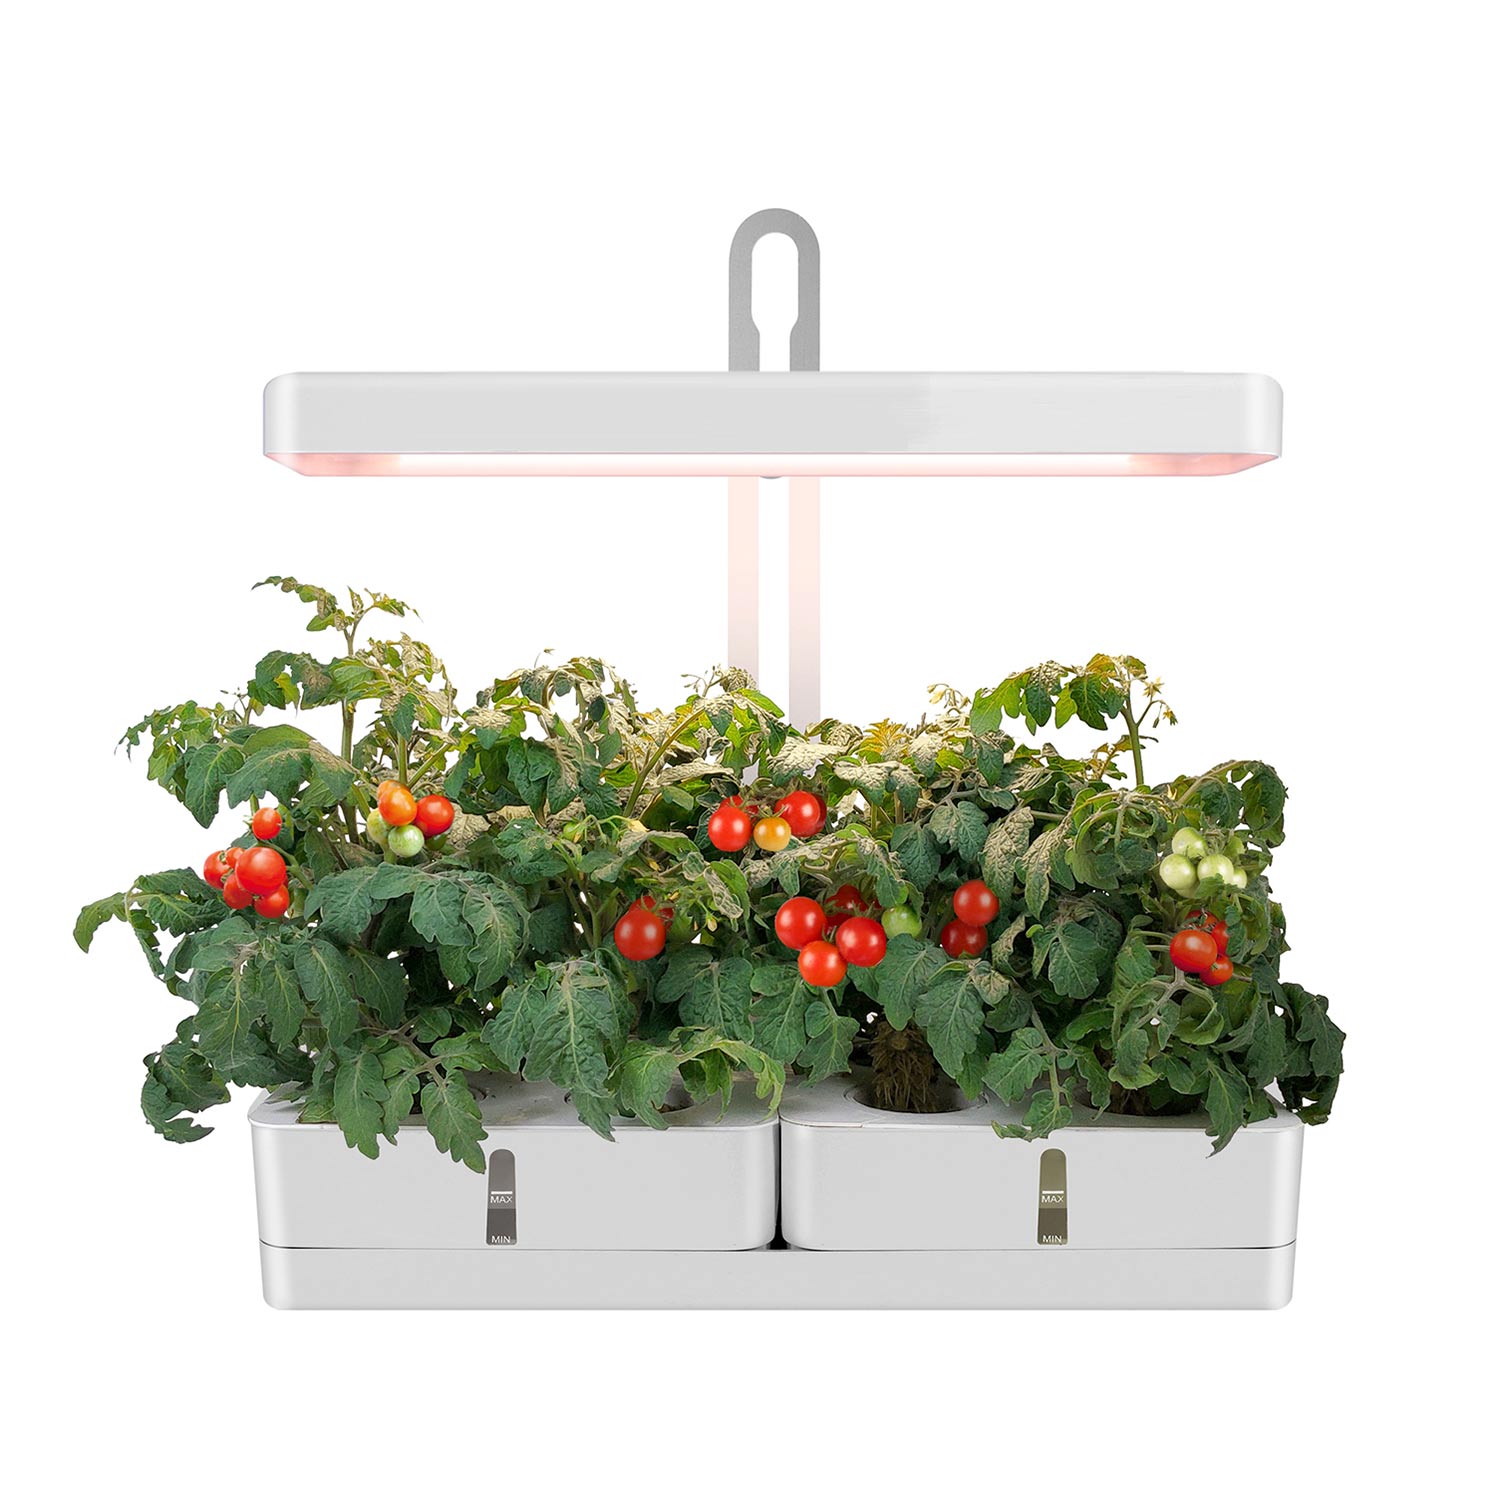 MG102 Plantas hidropónicas de interior Jardín Hierba Smart Gardening Kit de jardín de vegetales para interiores